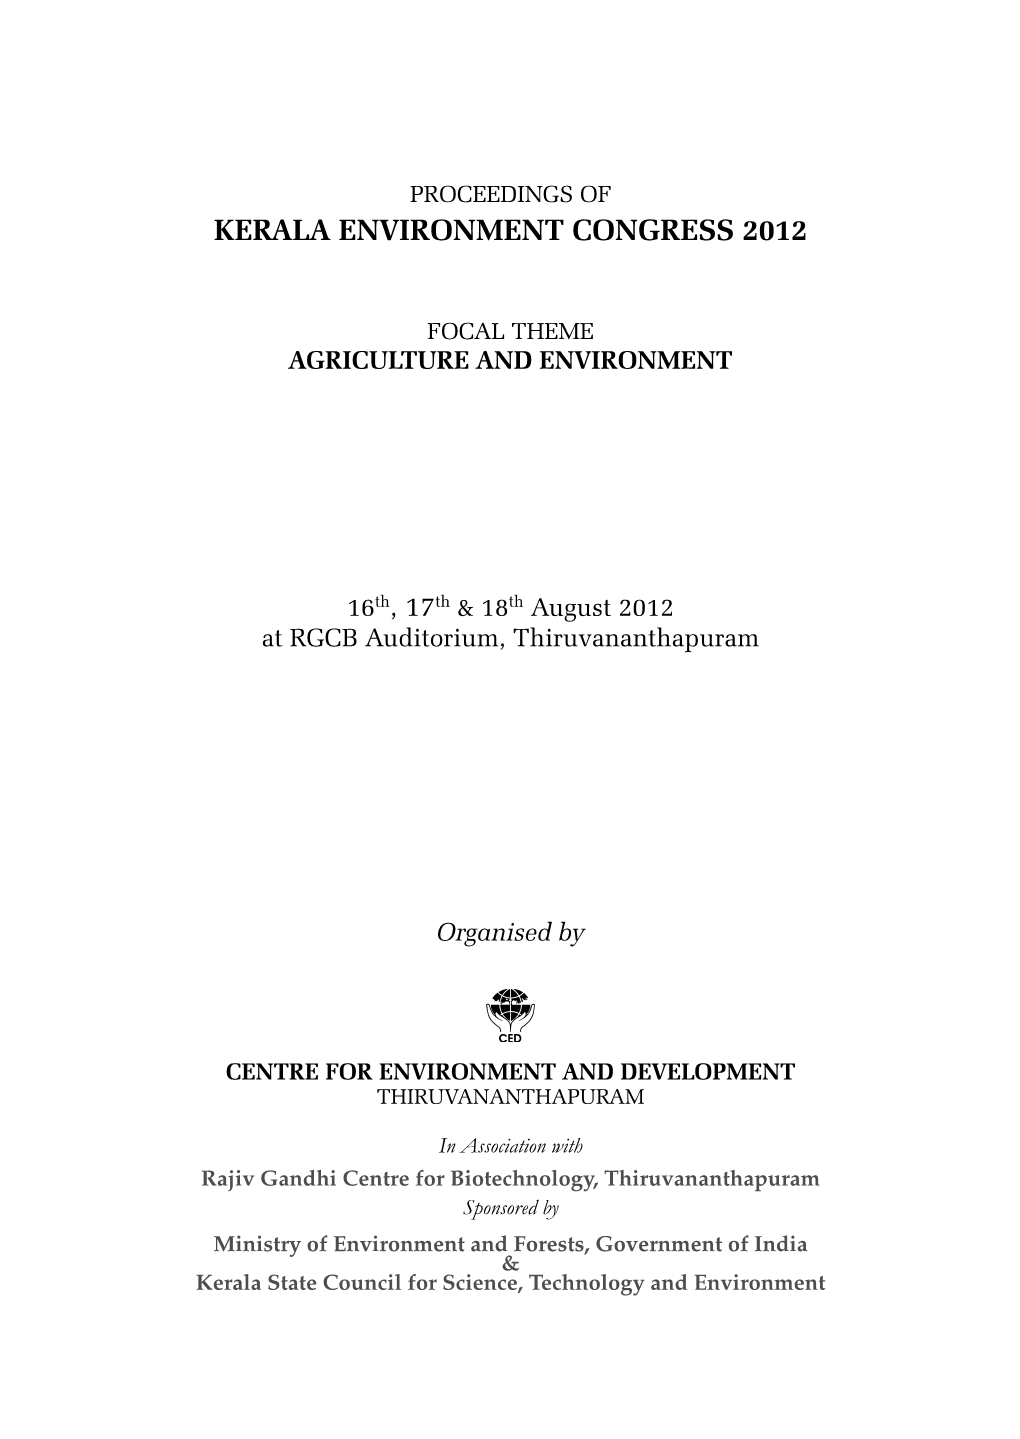 Kerala Environment Congress 2012